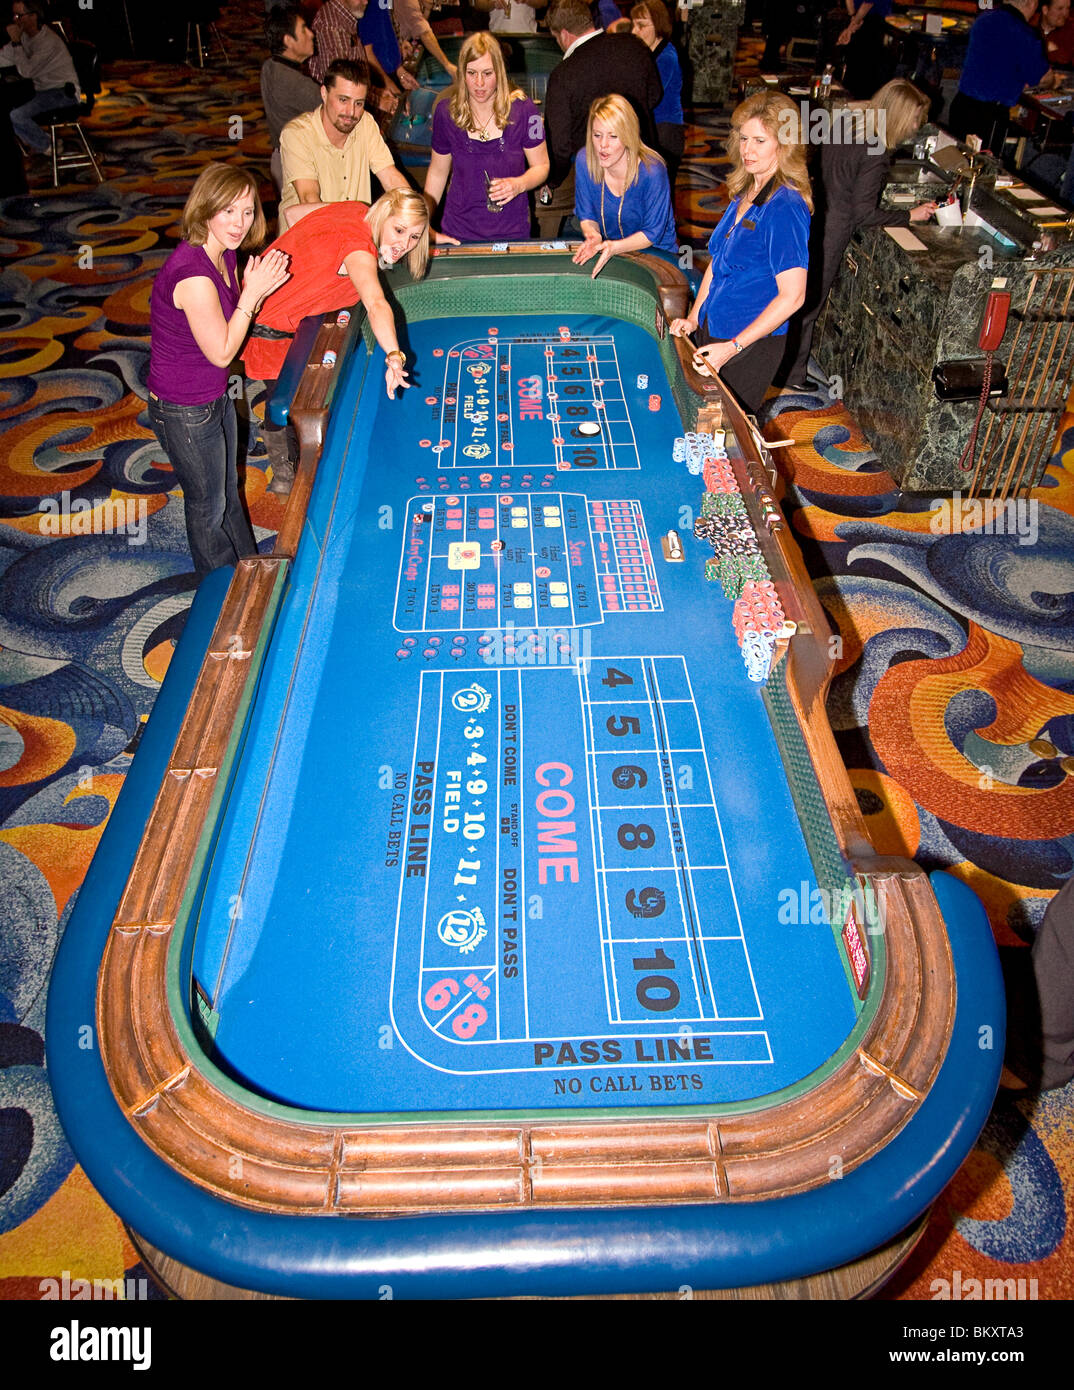 Szene auf Gaming-Etage des Casino - erregte Frau wirft Würfel am Craps-Tisch, während ihr Freunde anzufeuern. South Lake Tahoe Stockfoto